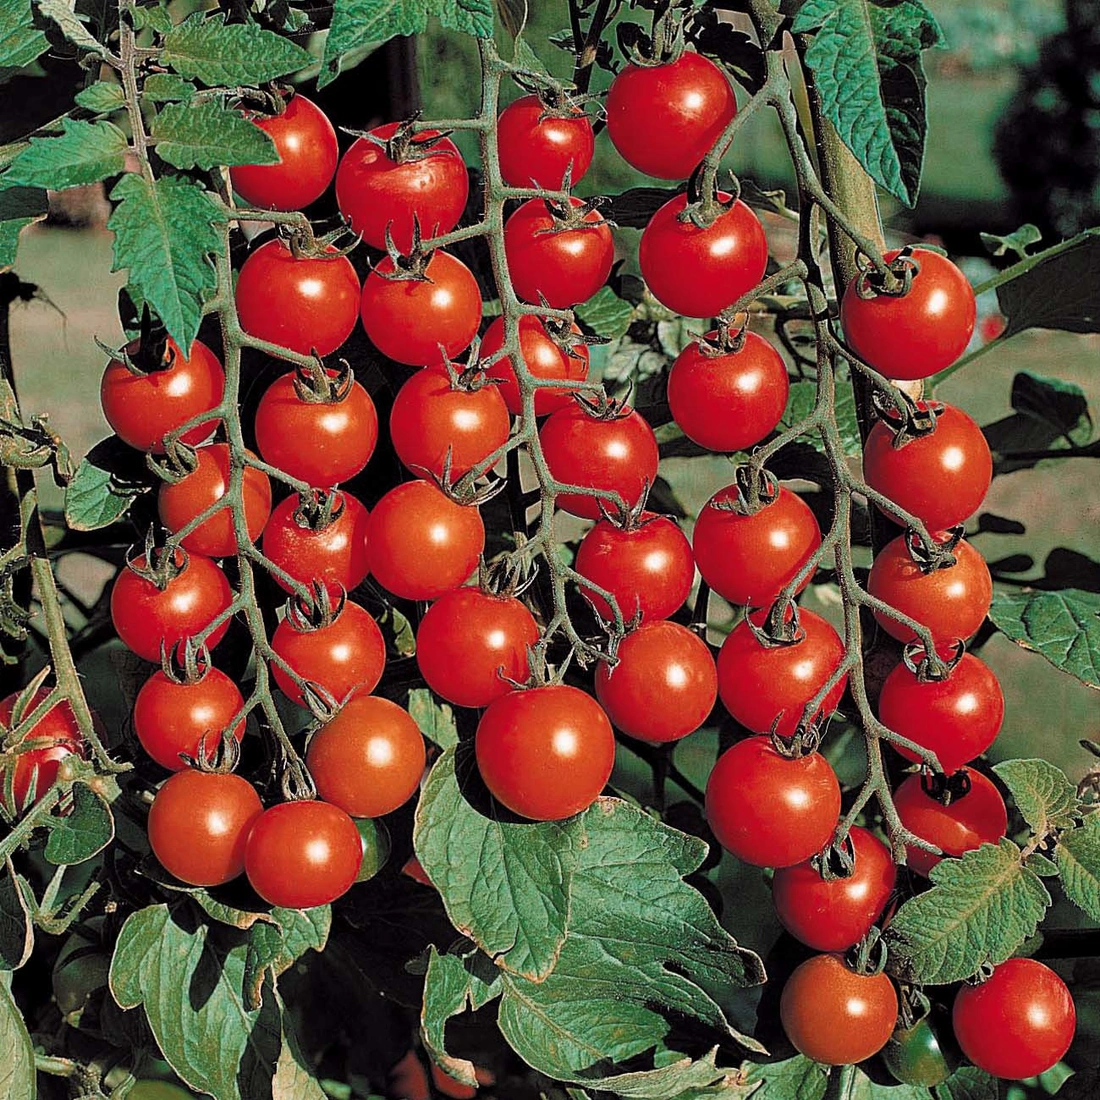 Урожай помидоров-плюс теплой грядки в том, что при разложении органических отходов, выделяется и большое количество тепла в корнях растений